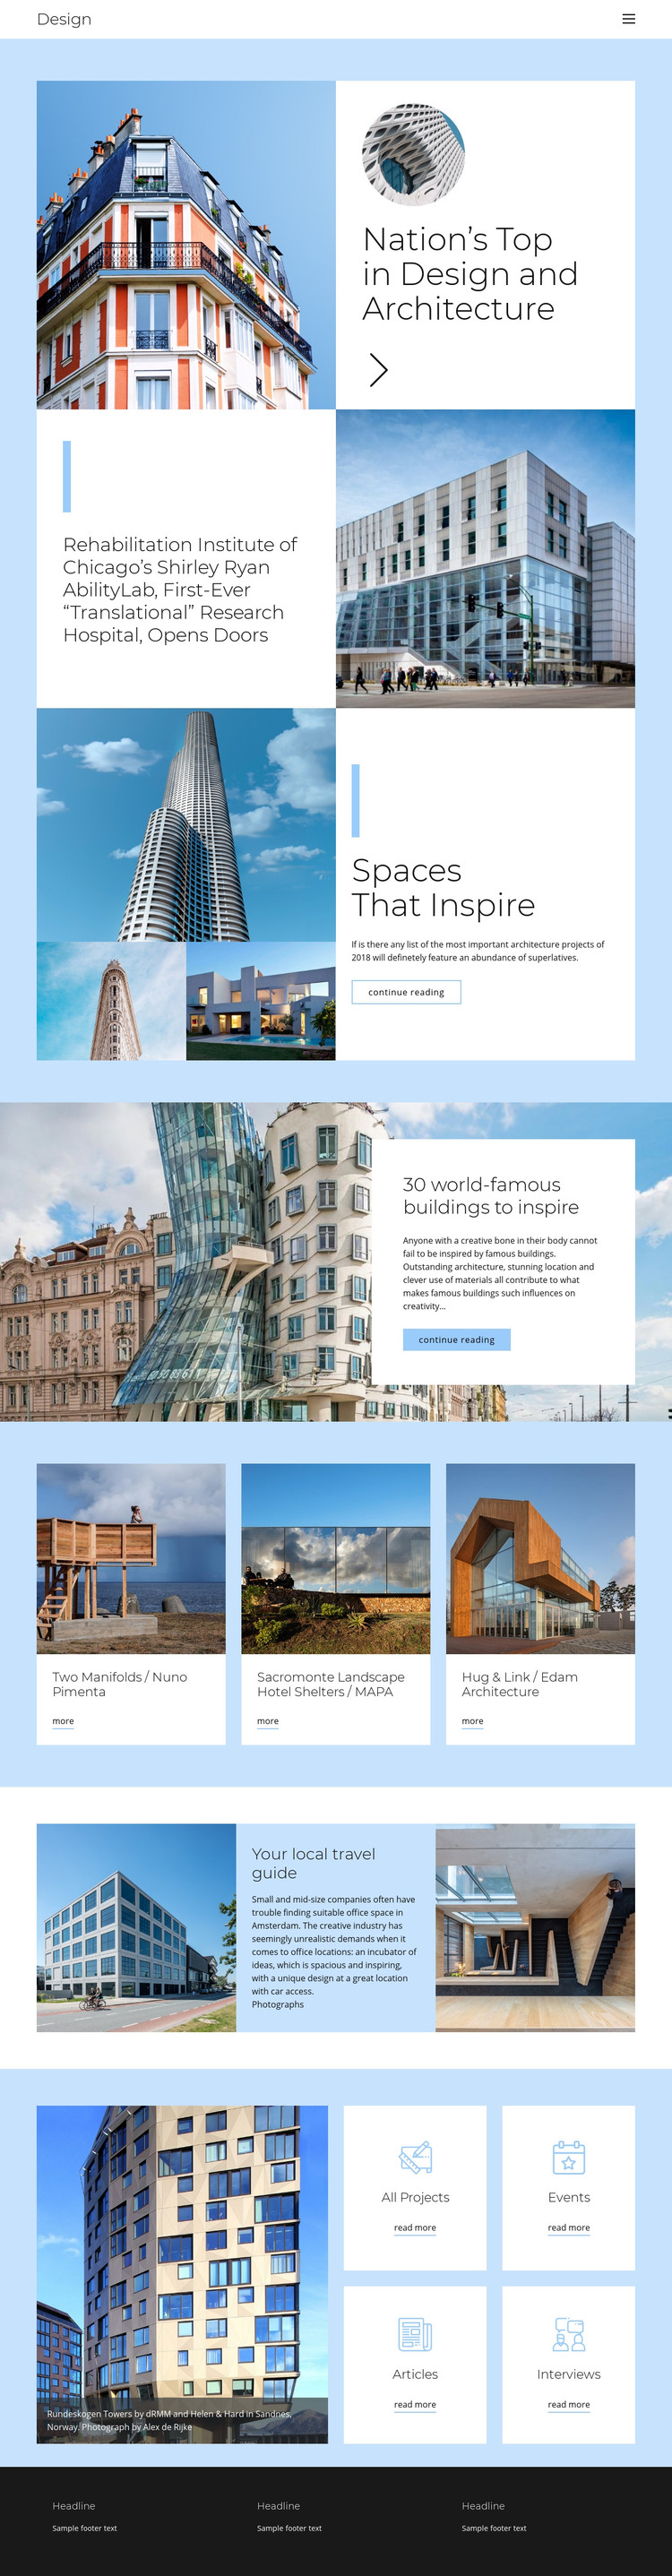 Architecture city guide Homepage Design